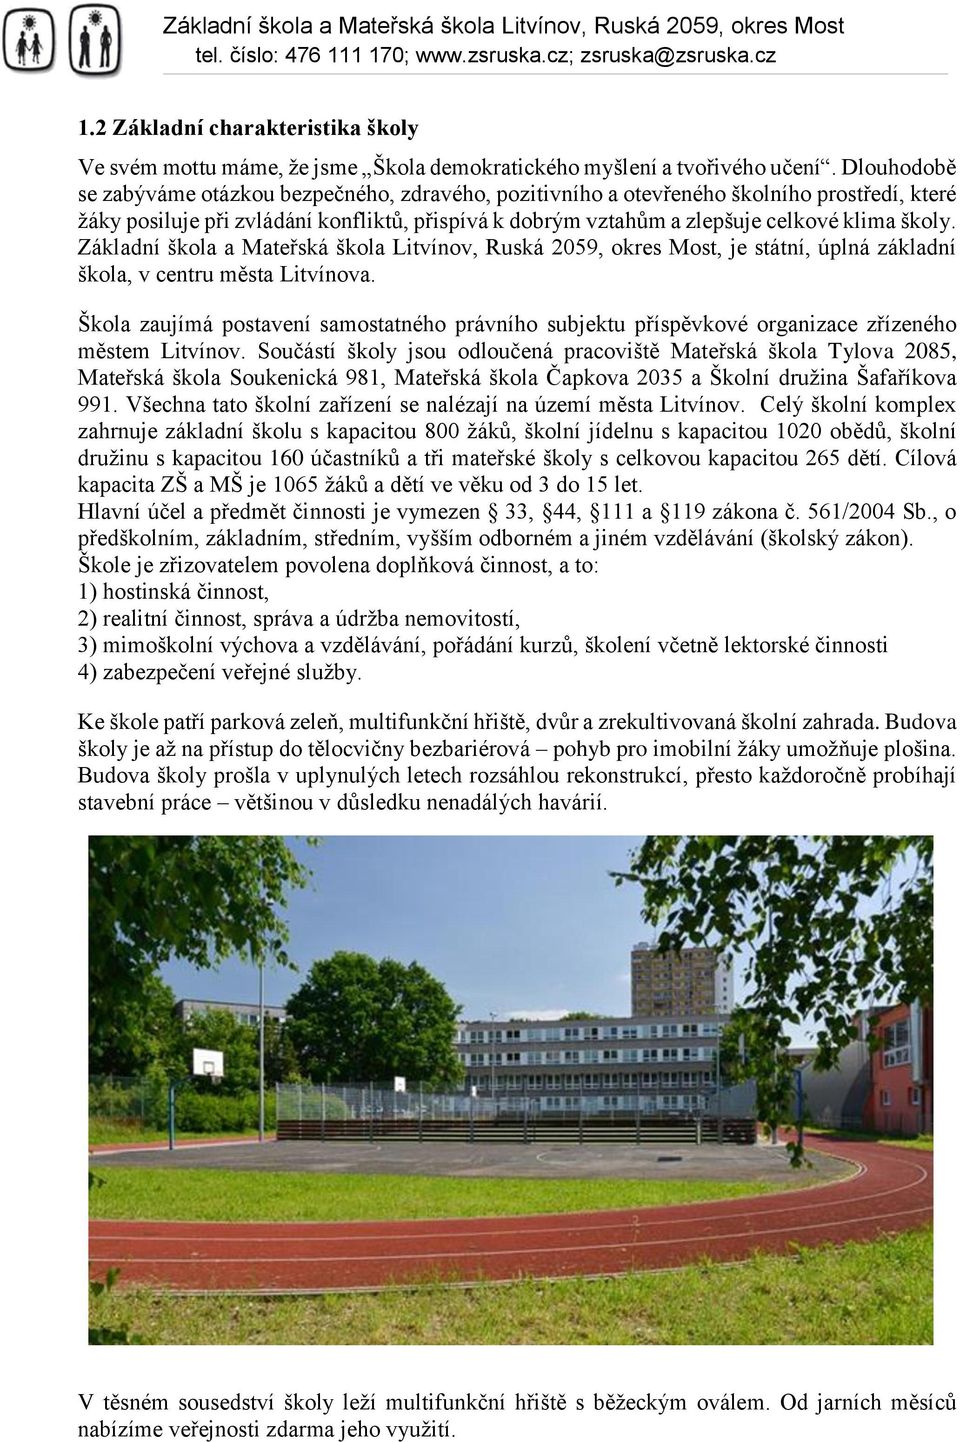 Základní škola a Mateřská škola Litvínov, Ruská 2059, okres Most, je státní, úplná základní škola, v centru města Litvínova.